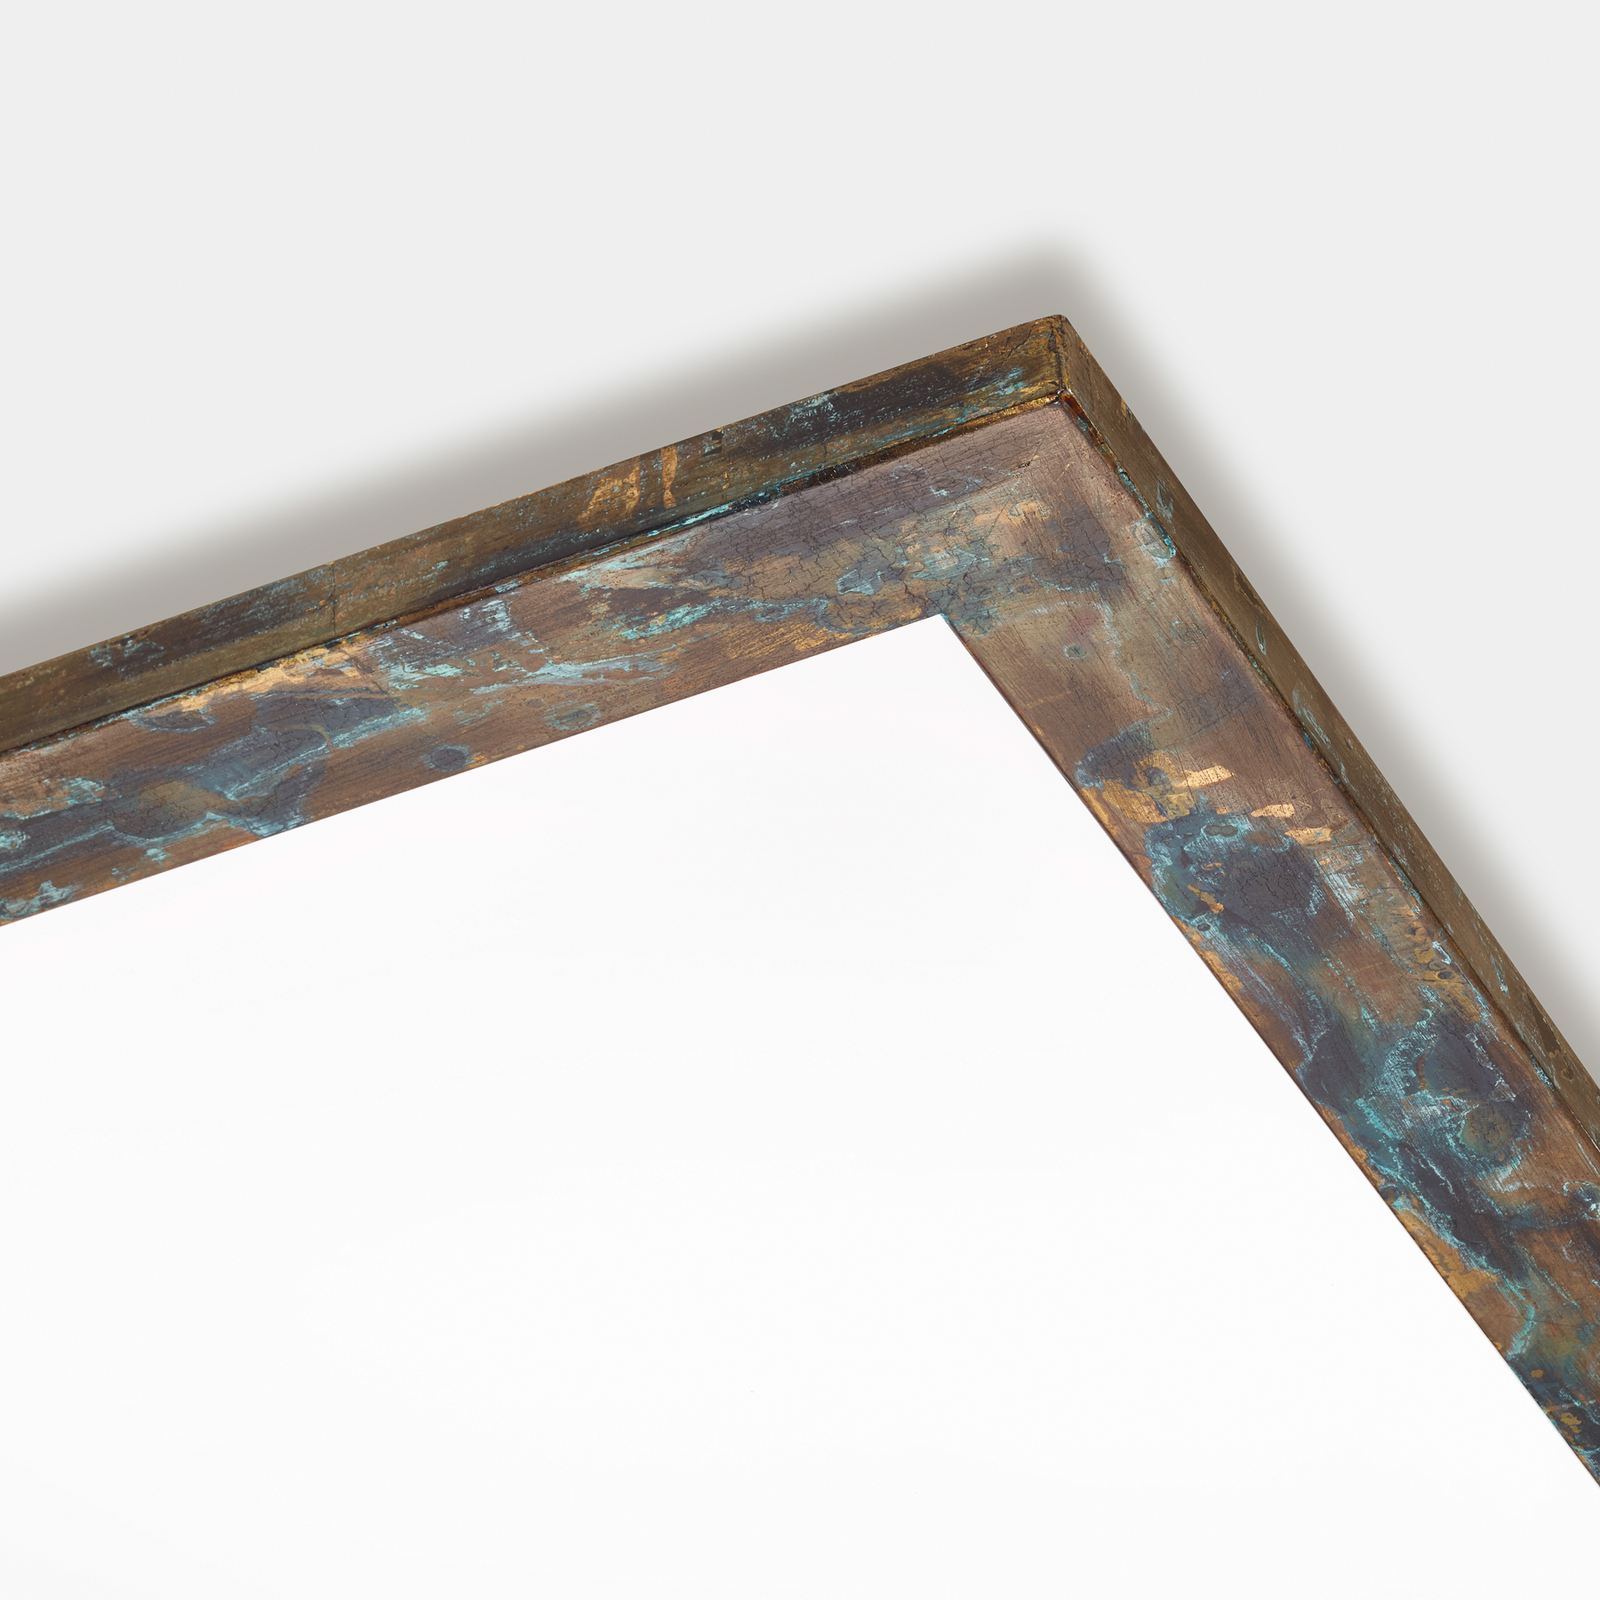 Panel LED Quitani Aurinor, pátina dorada, 45 cm